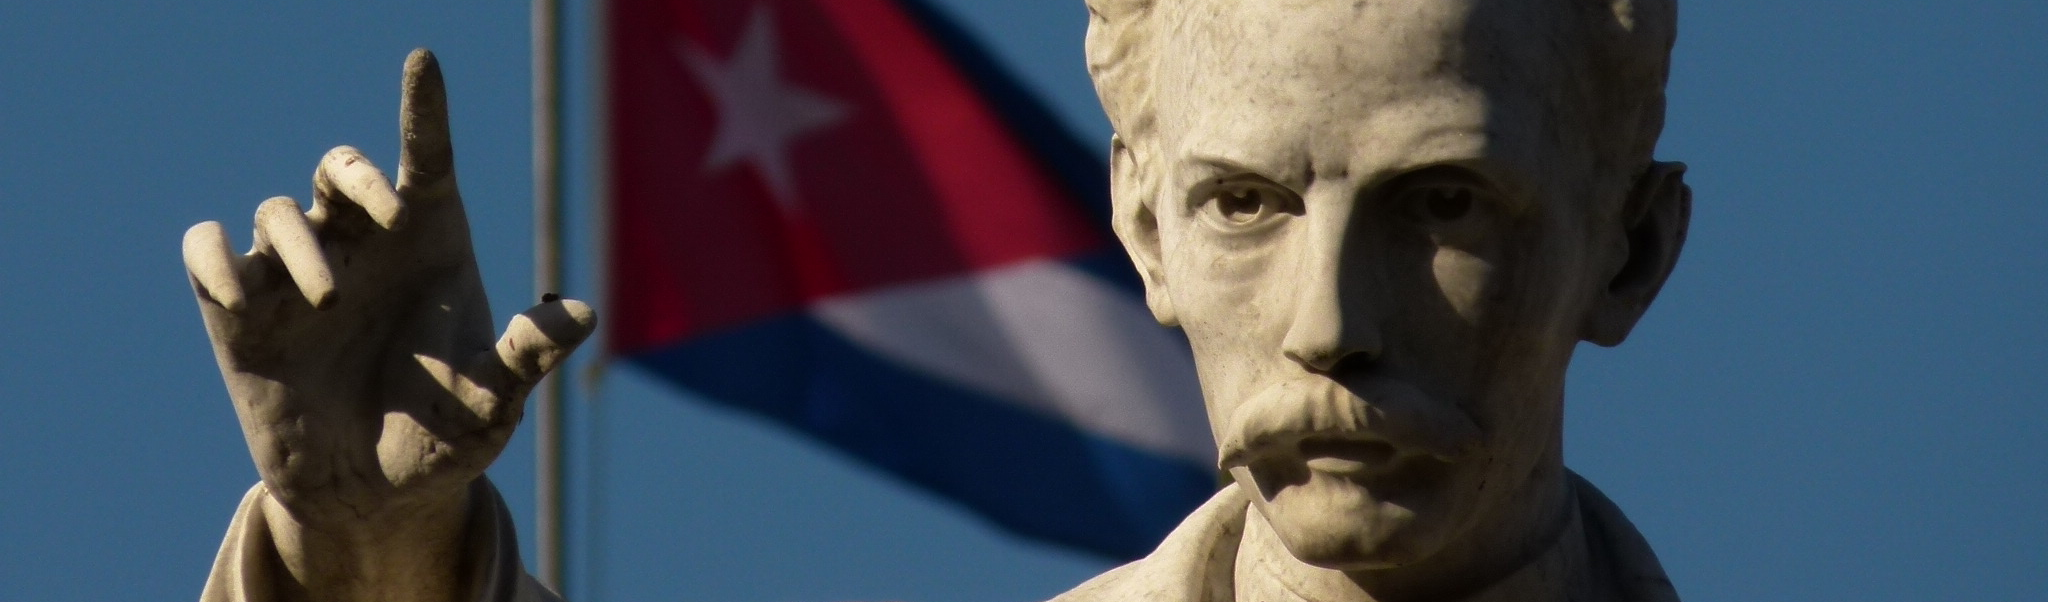 José Martí e sua defesa de Nossa América frente aos impérios espanhol e estadunidense